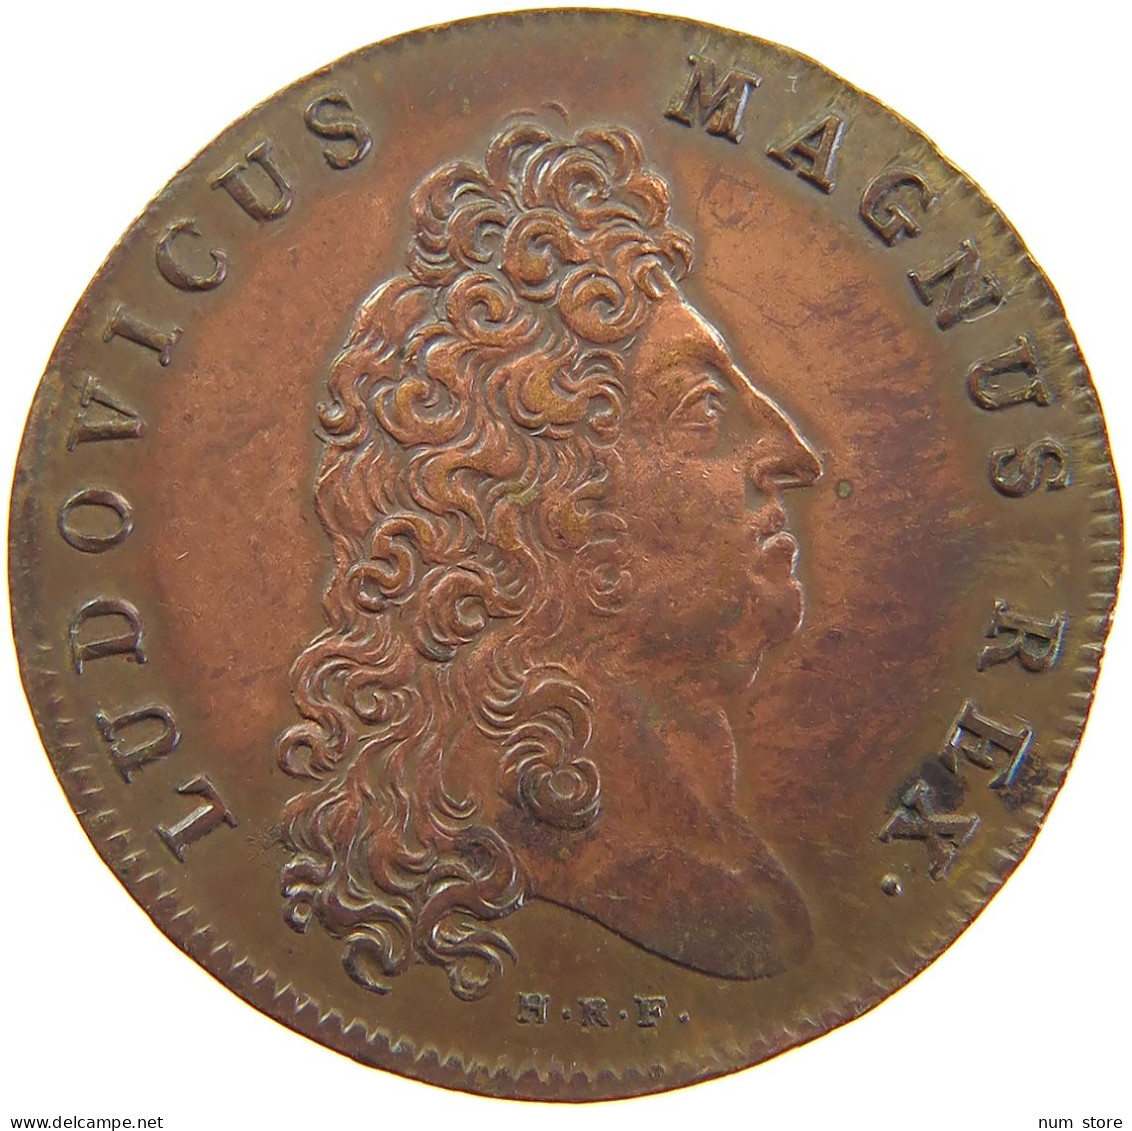 FRANCE MEDAILLE 1700 Louis XIV. (1643–1715) CHAMBRE AUX DENIERS CHAMBRE AUX DENIERS 1700 #sm05 1025 - Monarquía / Nobleza